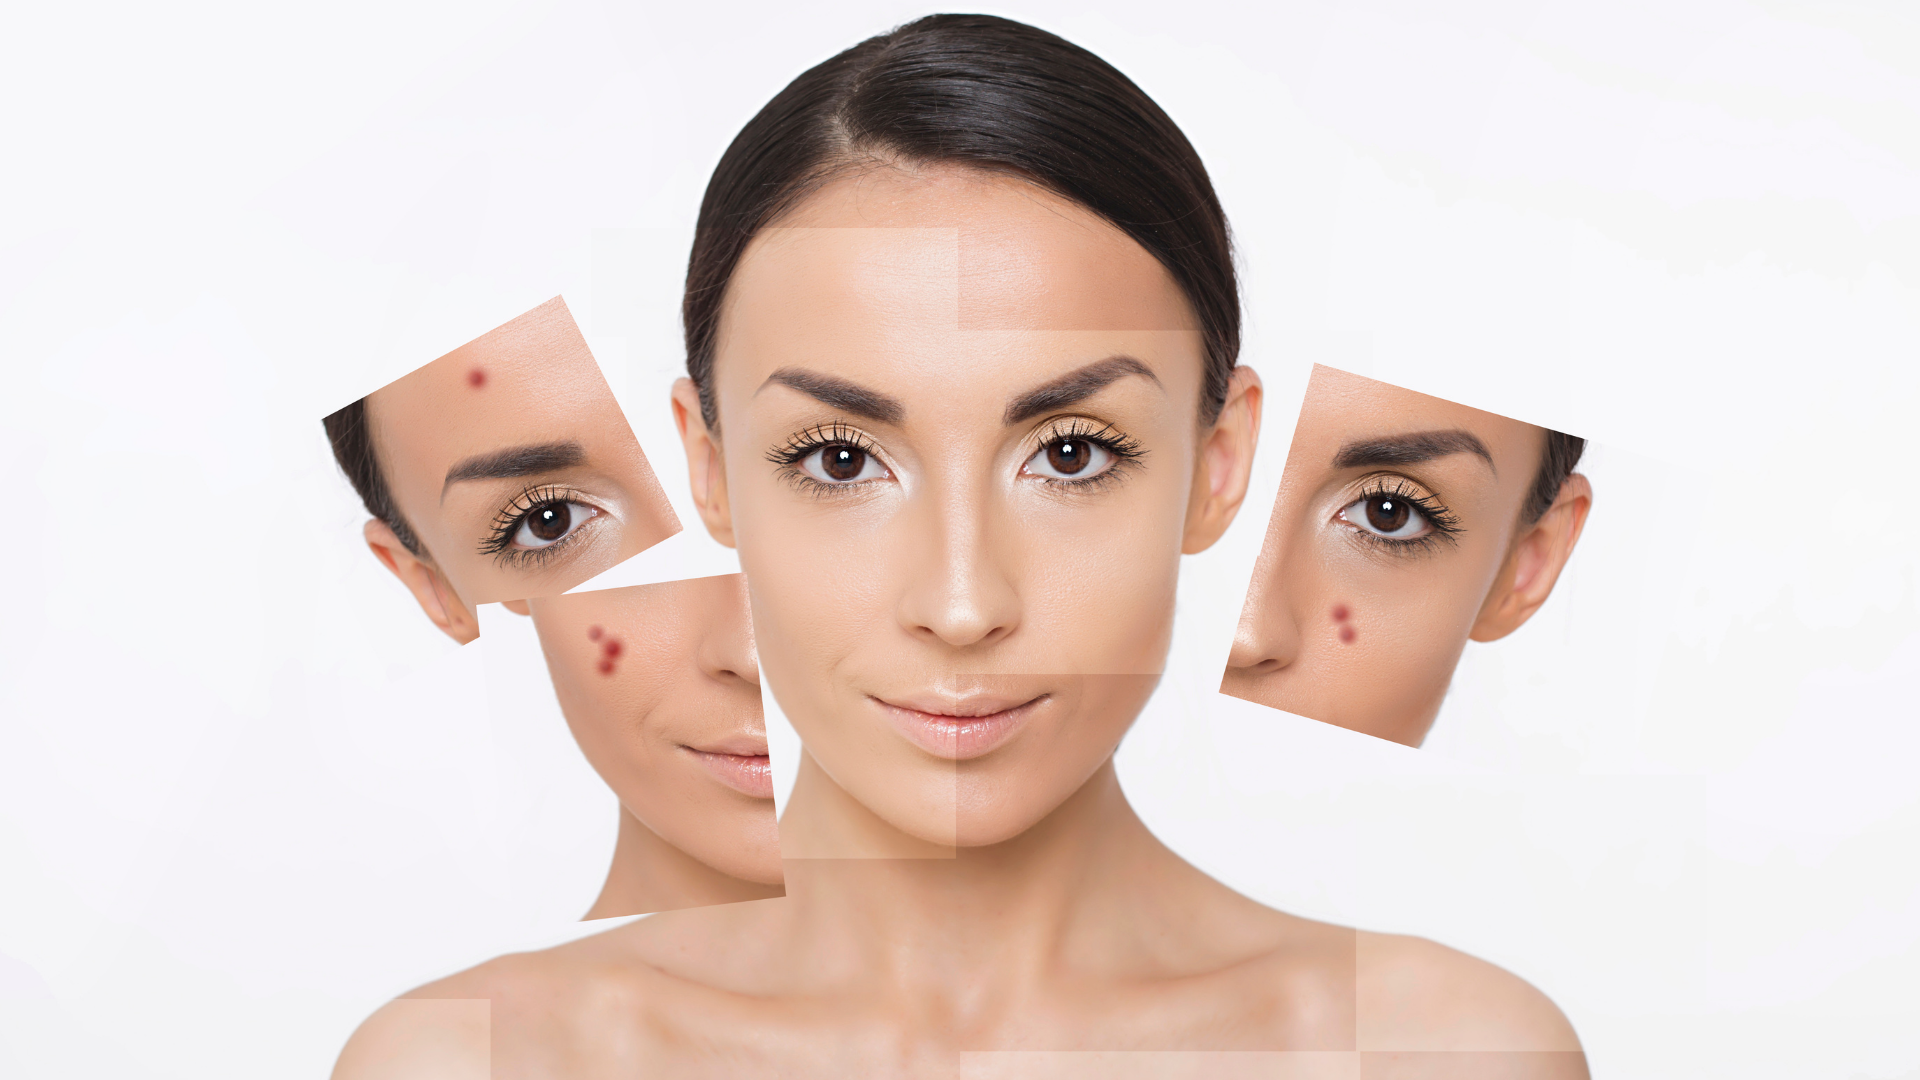 Foto de capa do artigo "Ácidos para a pele: quais os tipos, benefícios e indicações?"